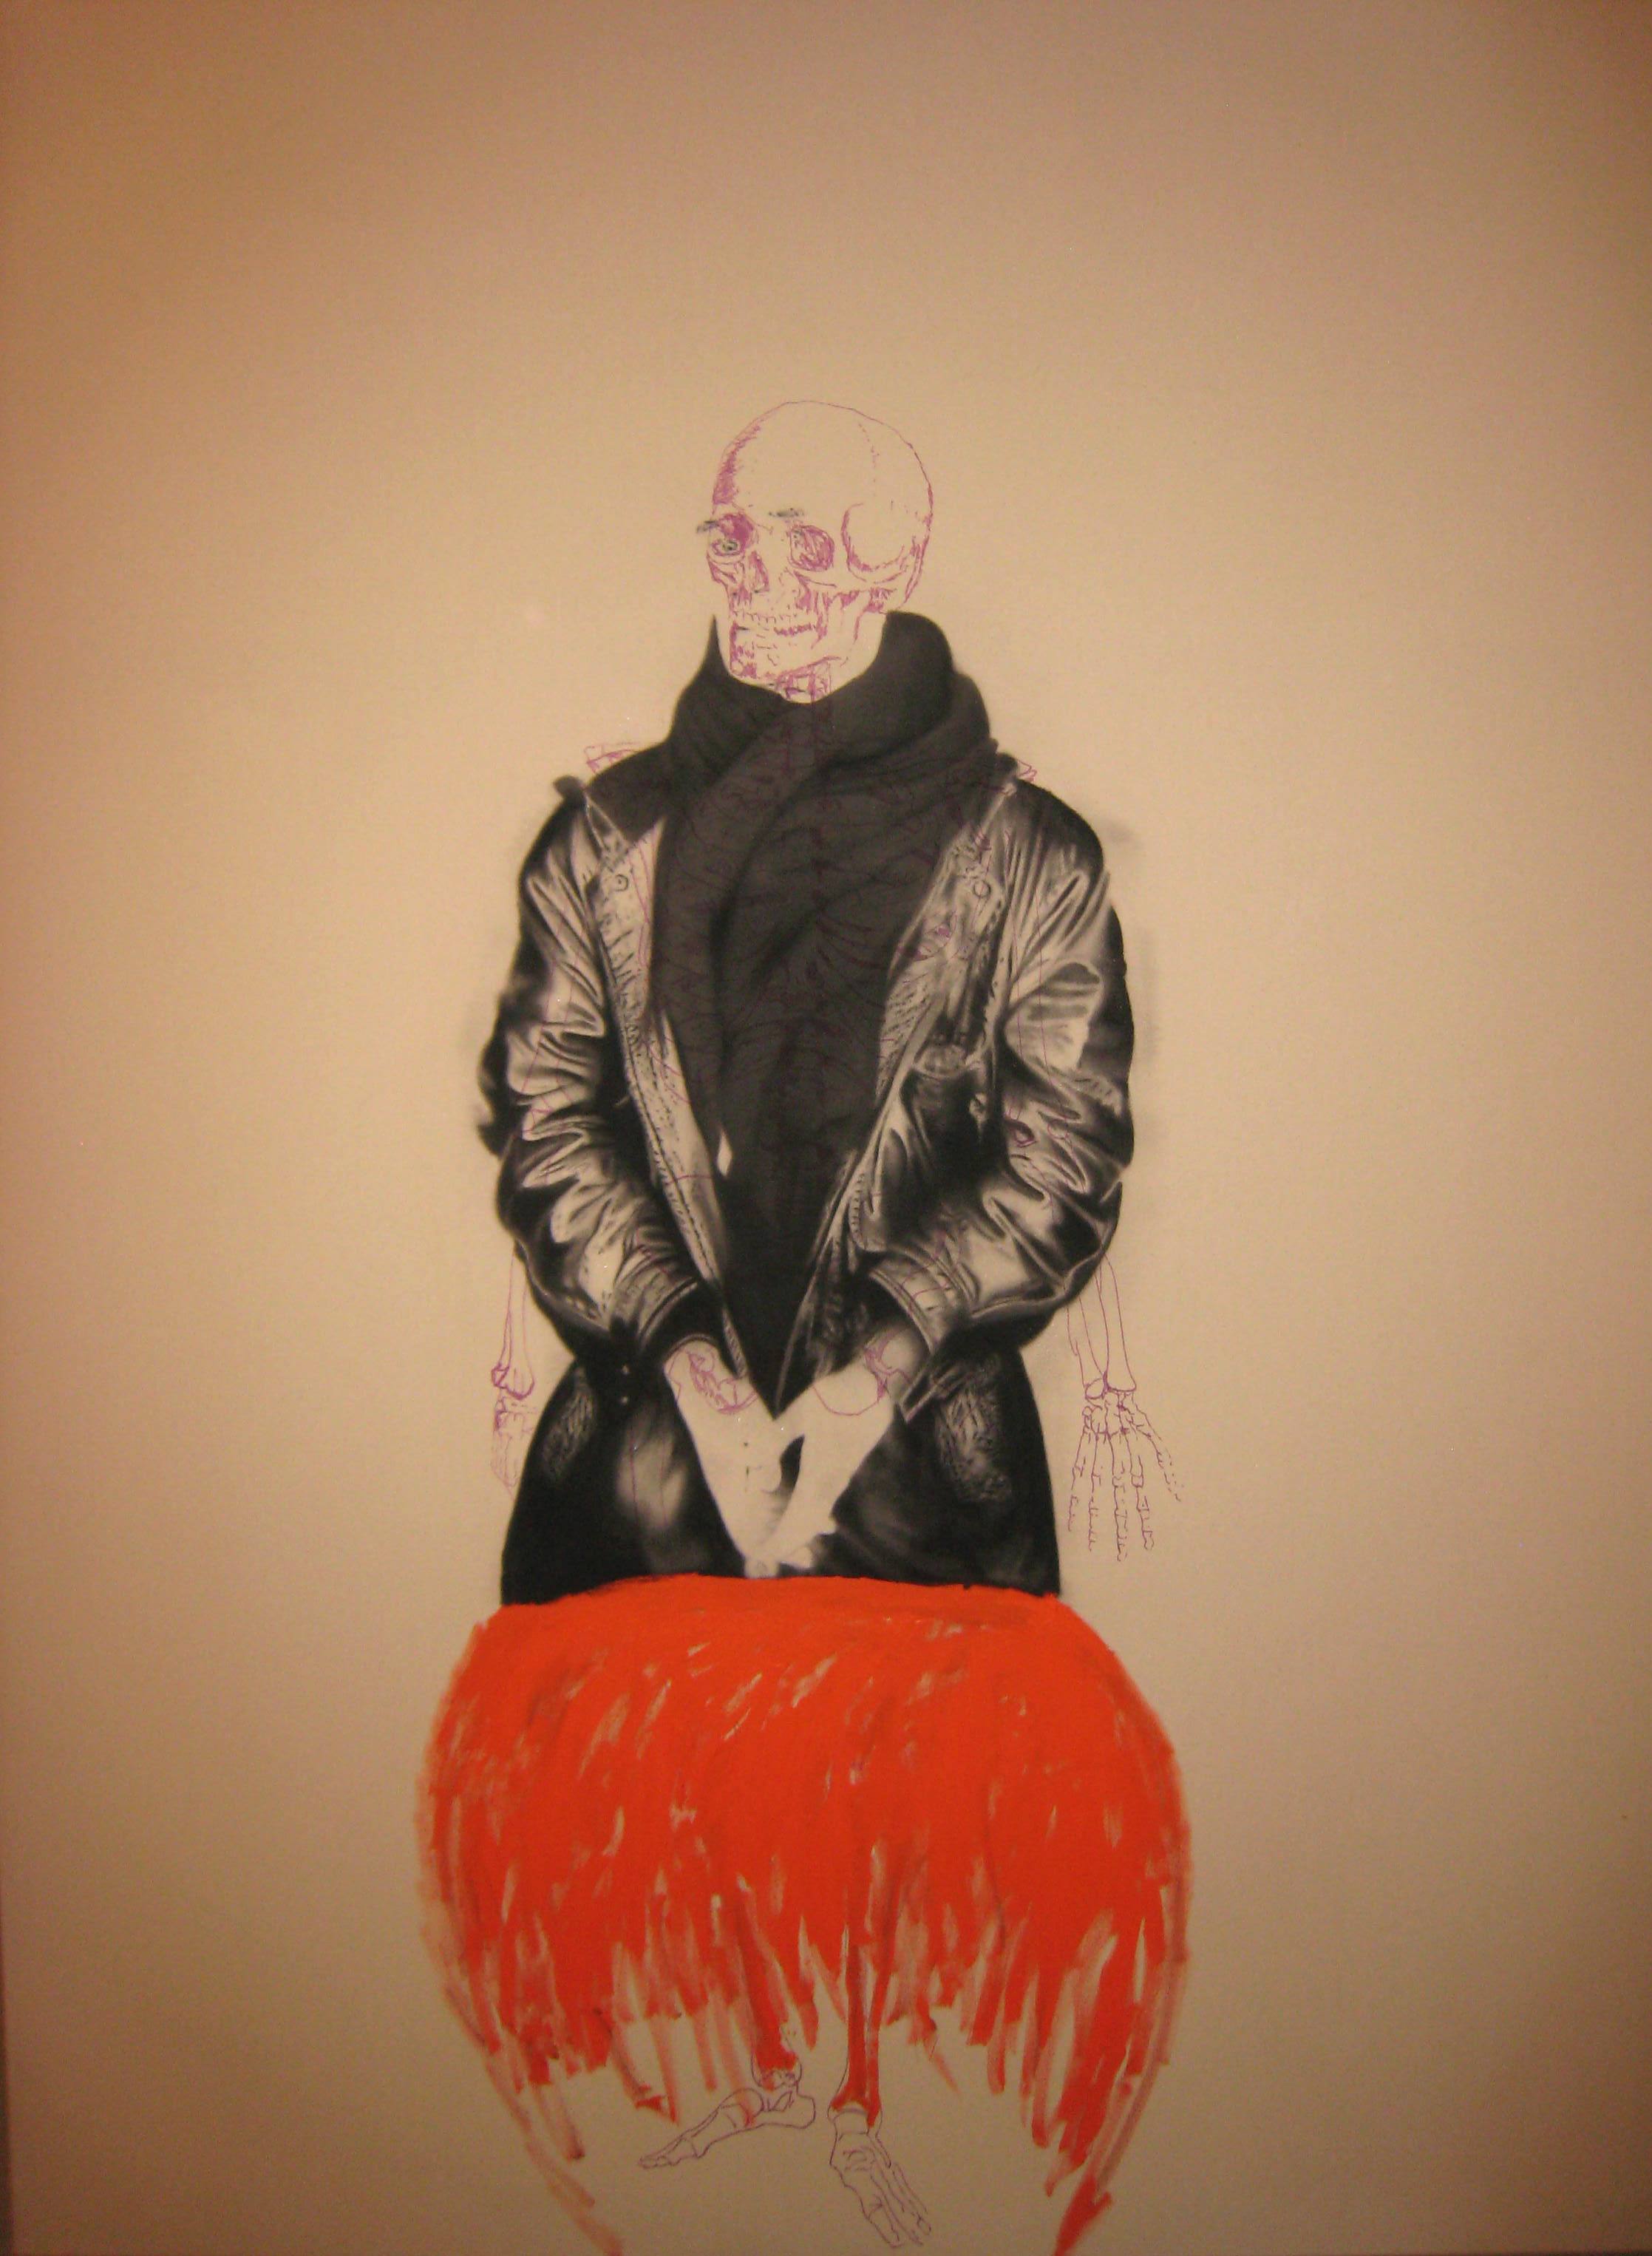   Autoportrait , 2009. Huile et fusain sur toile, 120 x 150 cm.&nbsp; 